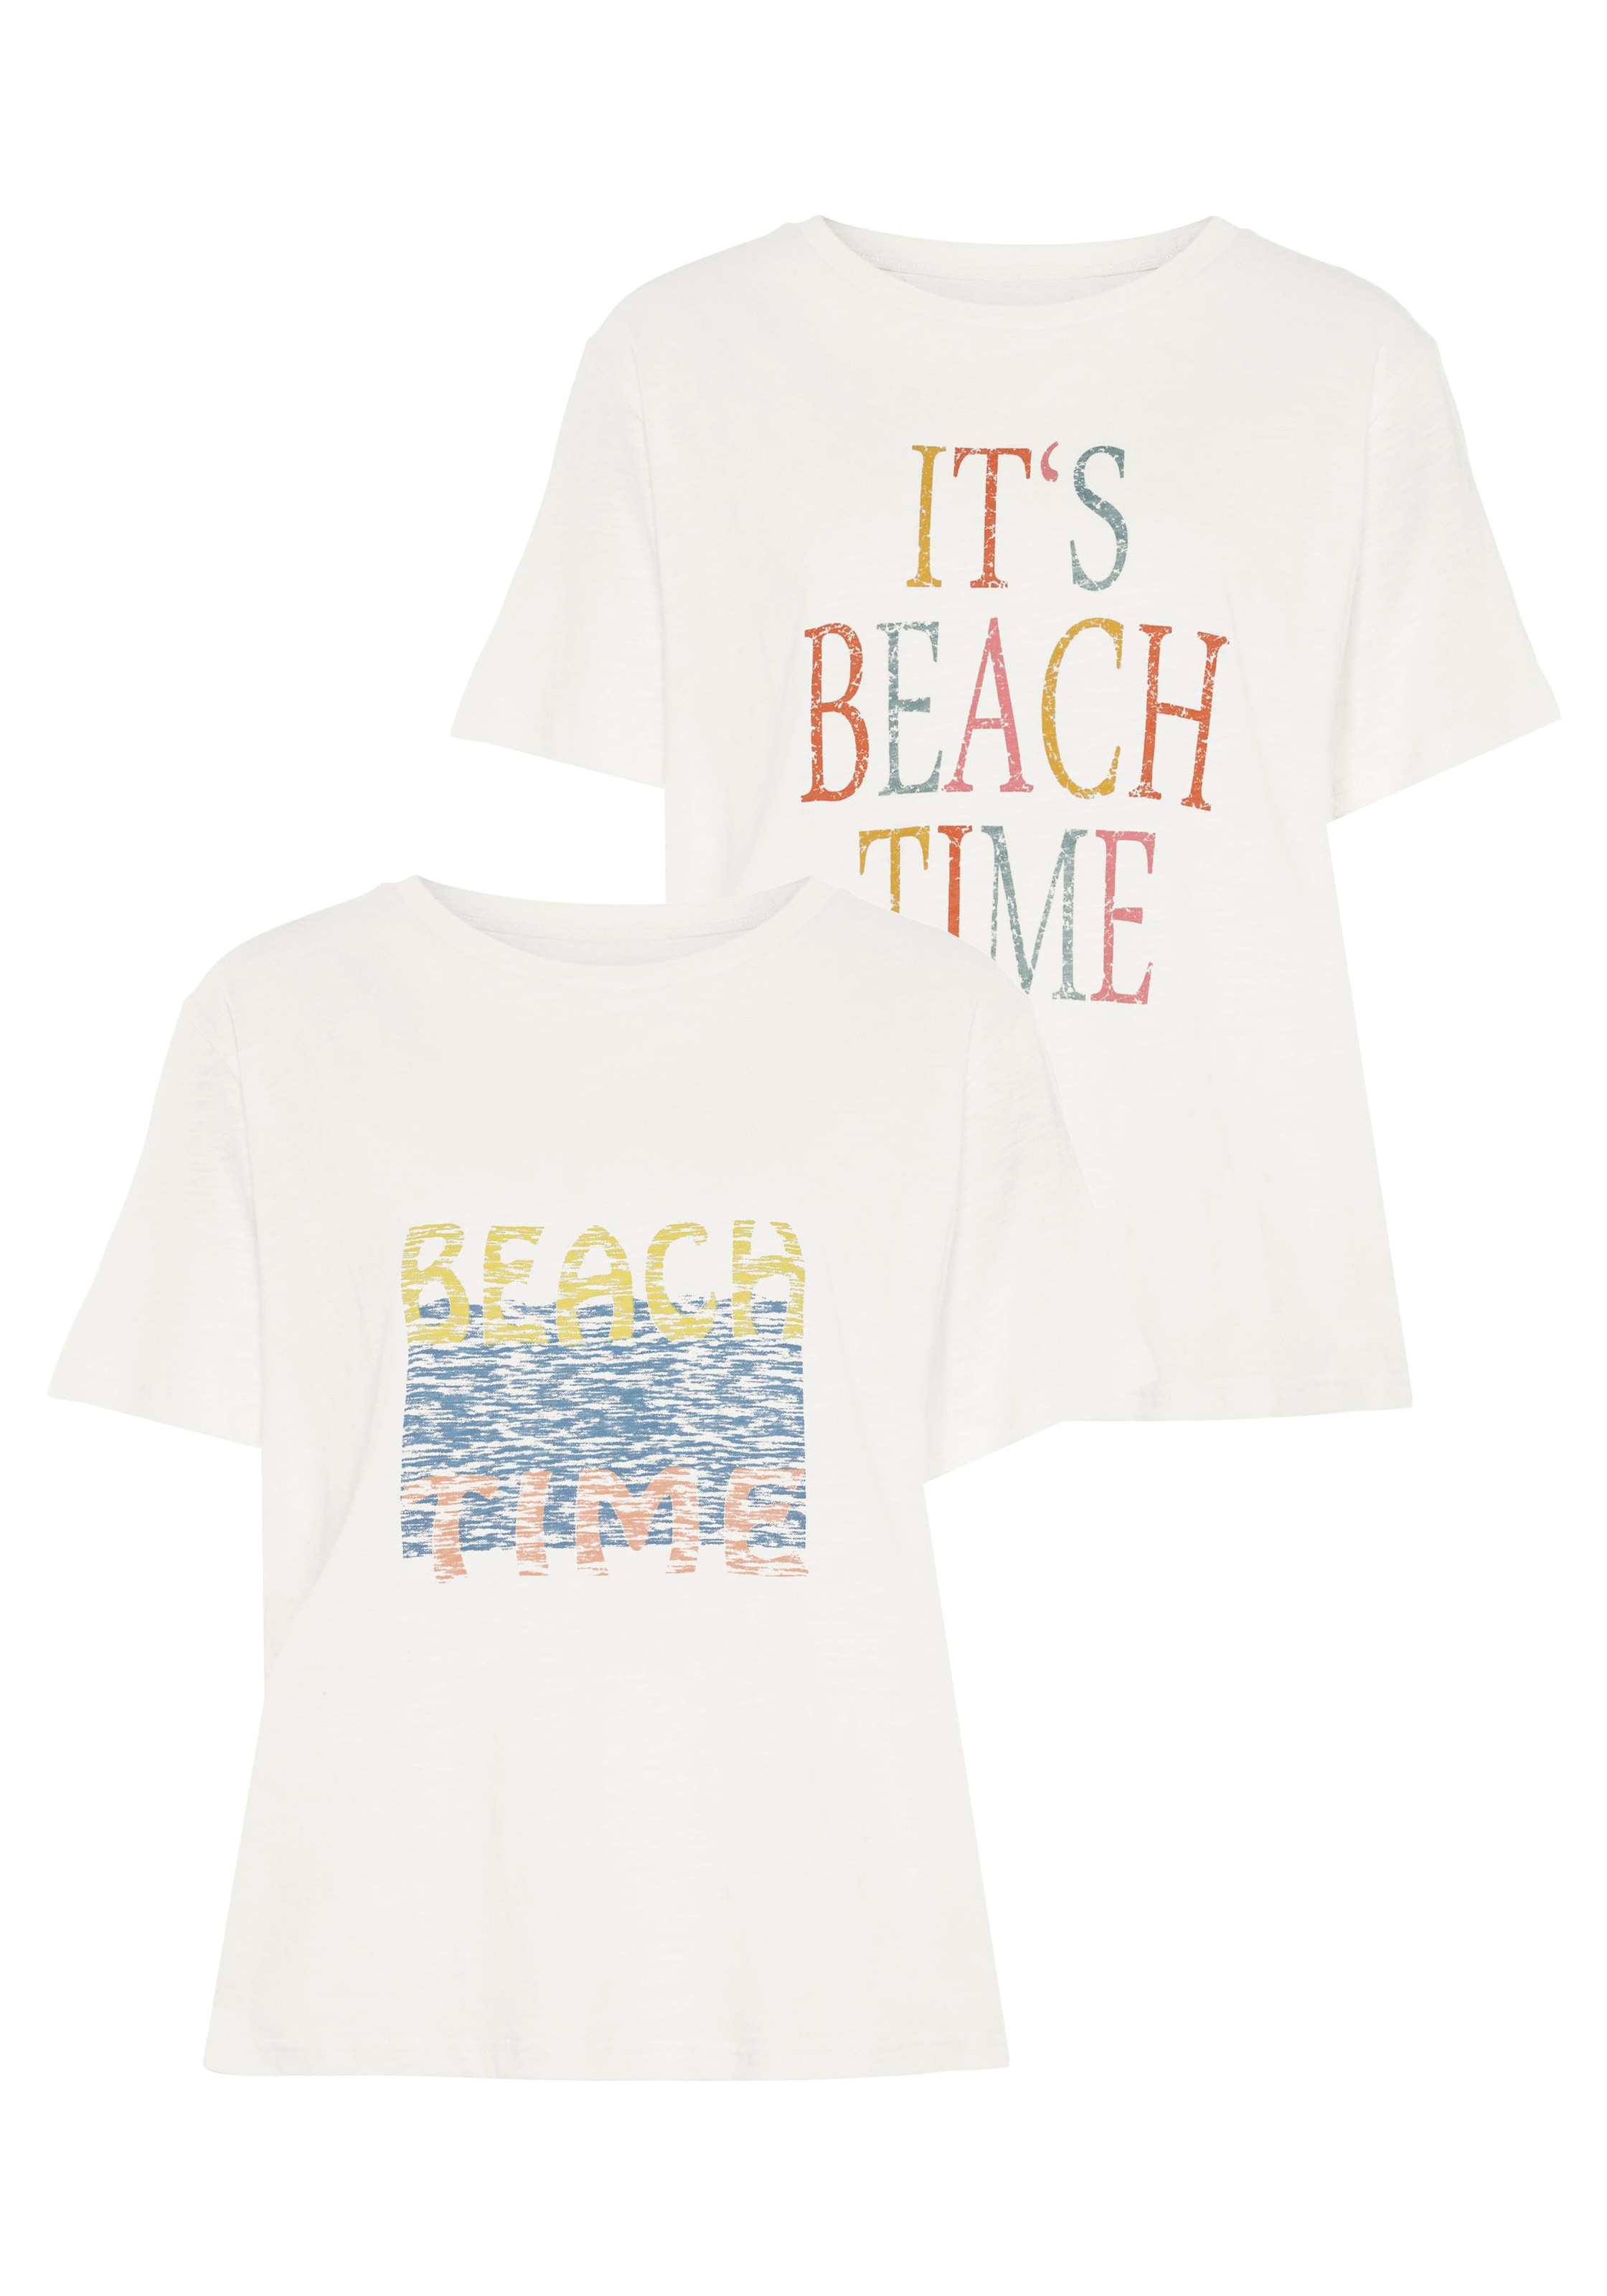 tlg.), UNIVERSAL T-Shirt, mit zwei Drucken 2 bei (Packung, verschiedenen Beachtime online